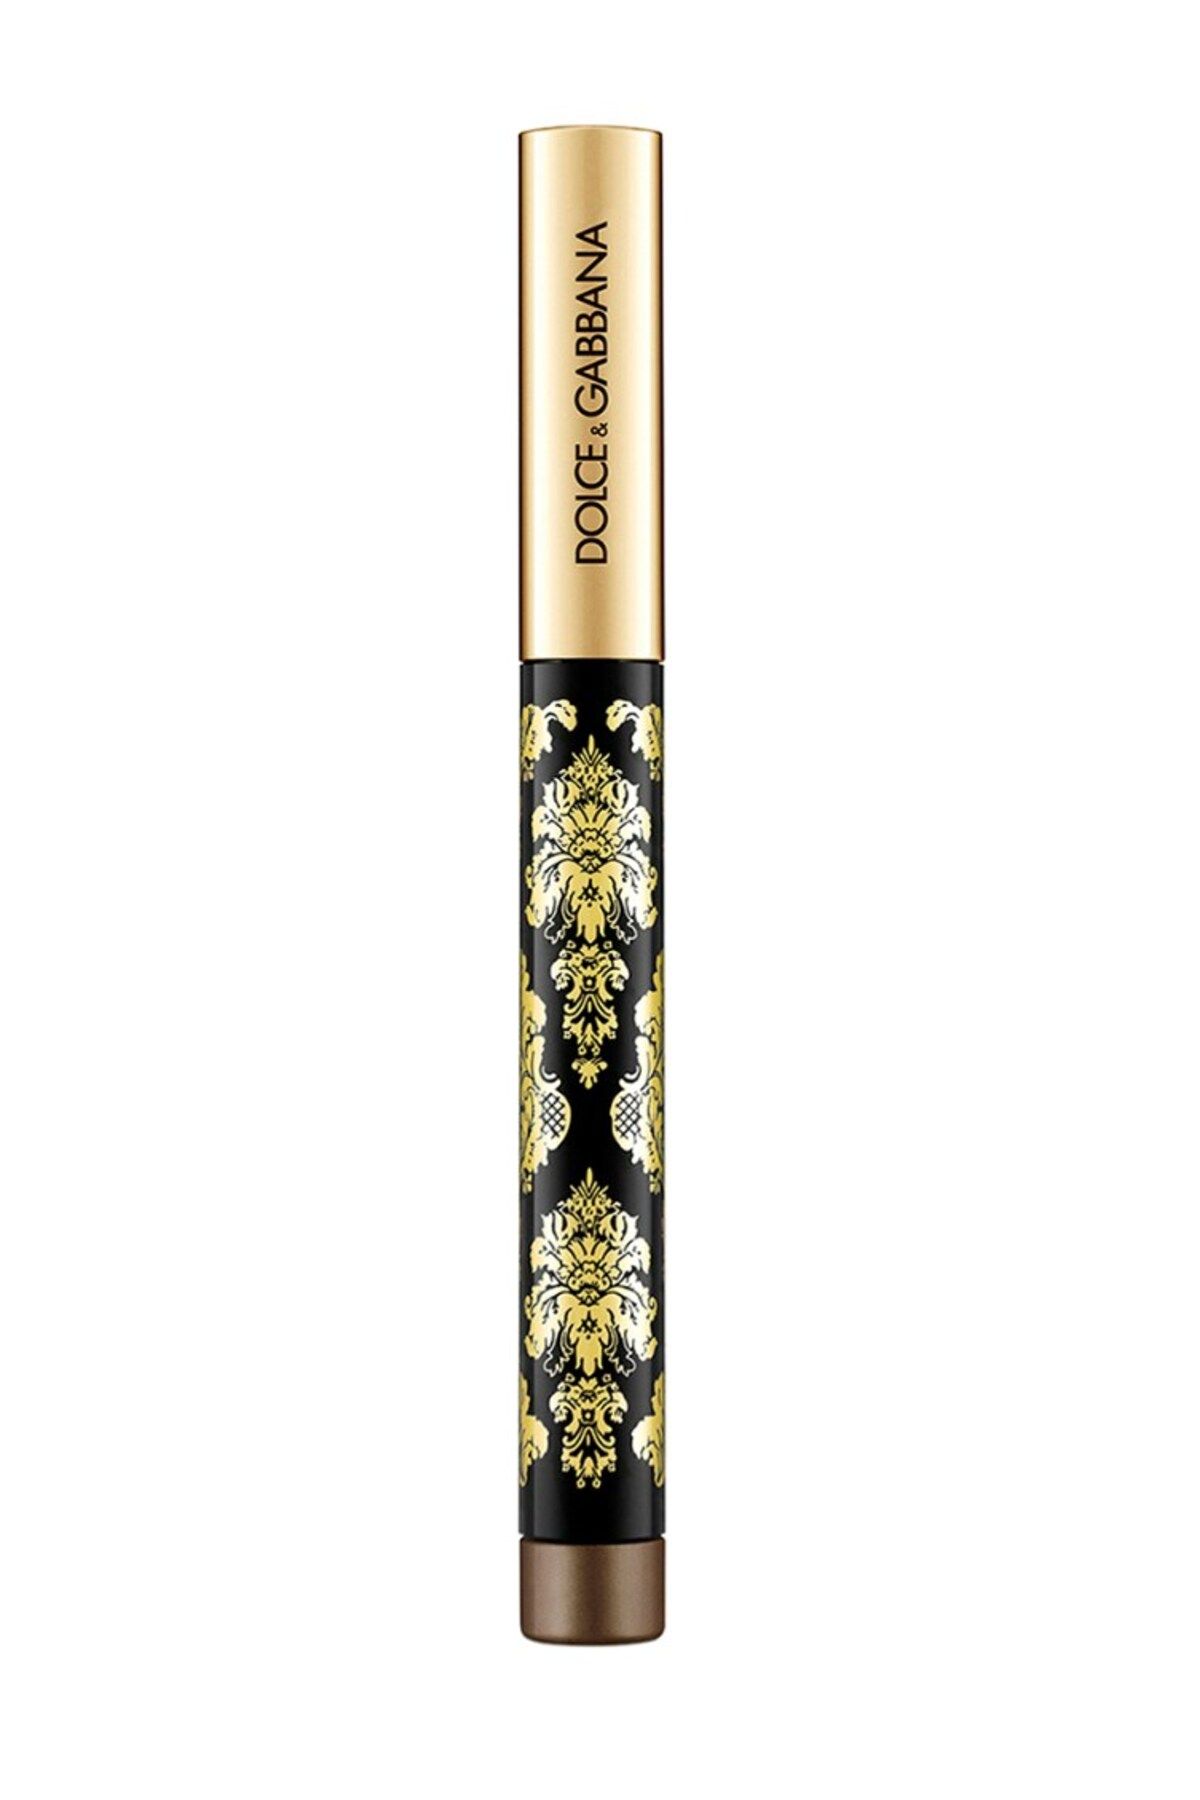 Dolce &Gabbana Intenseyes Creamy Eyeshadow Stick Bronze 4